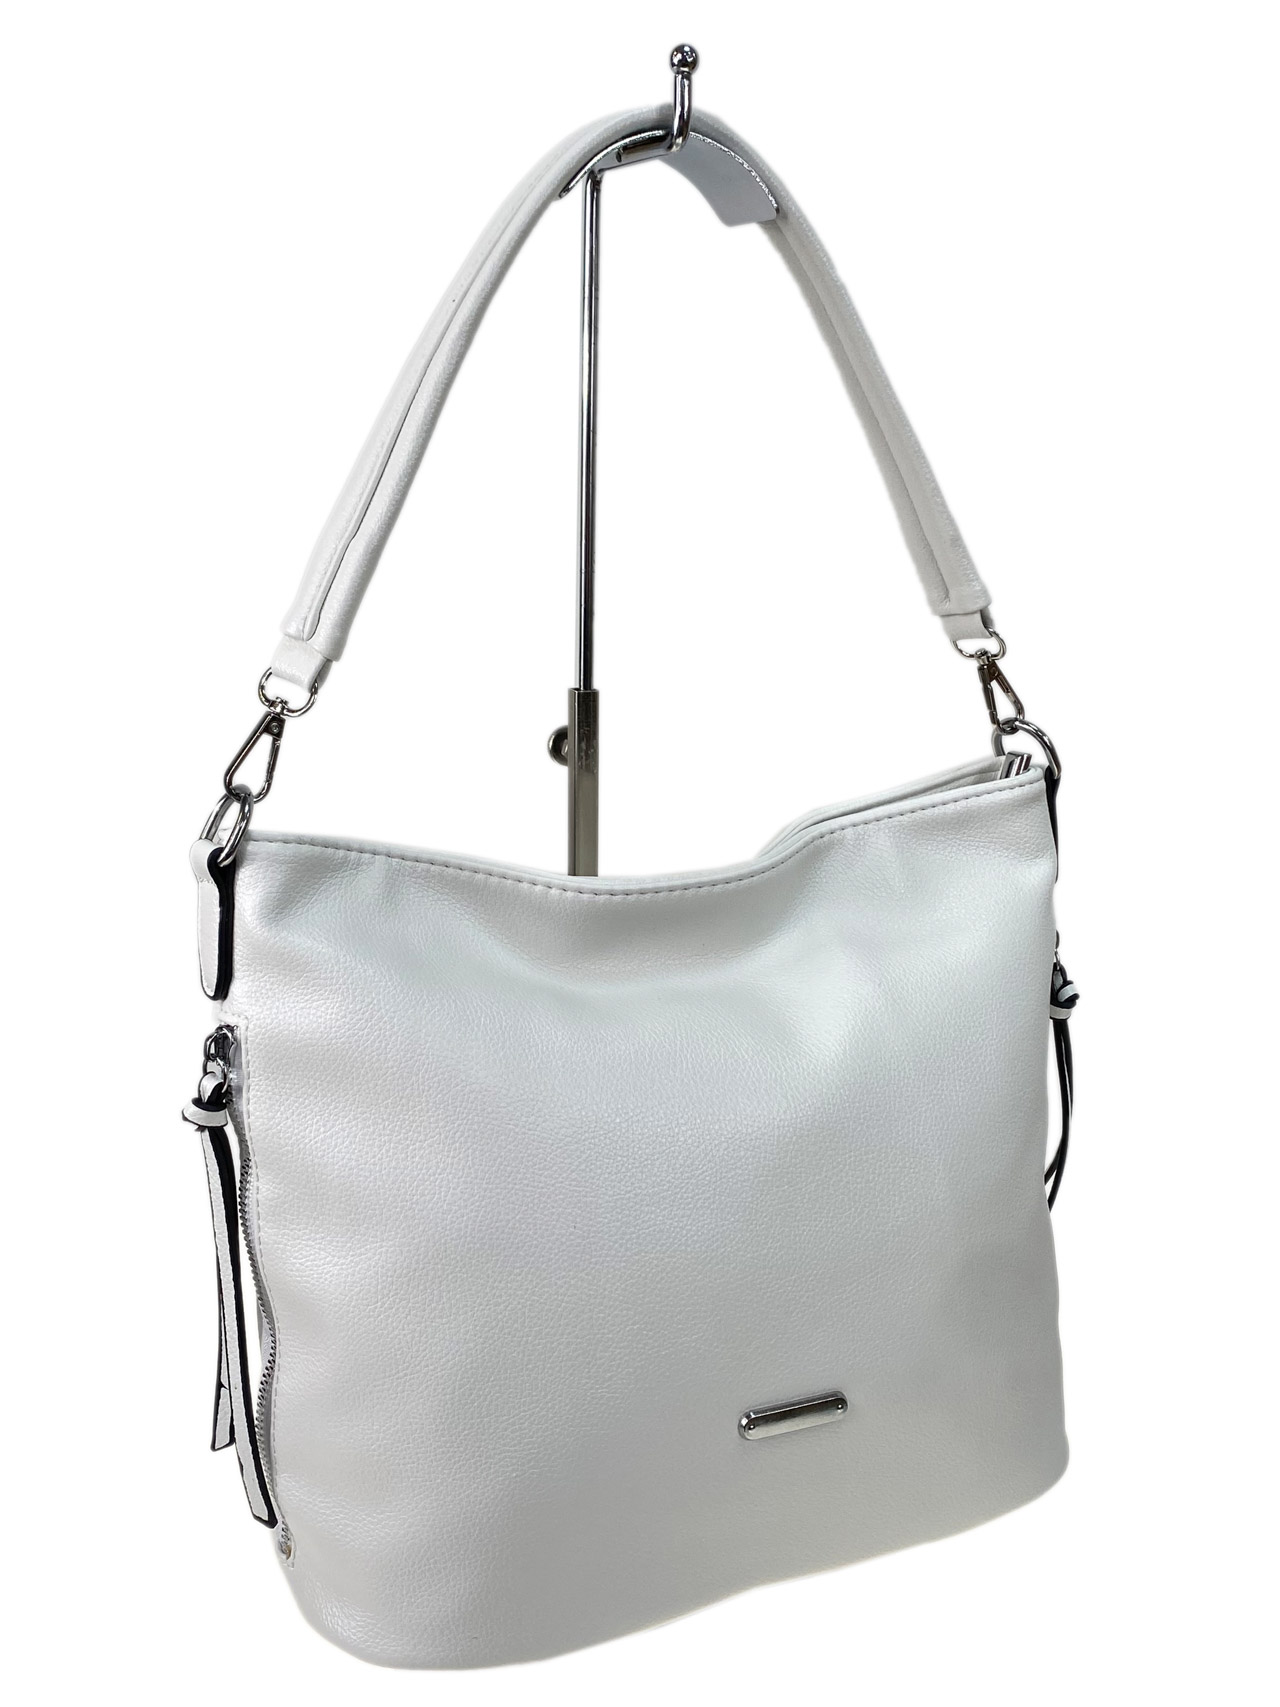 Женская сумка из искусственной кожи, цвет белый